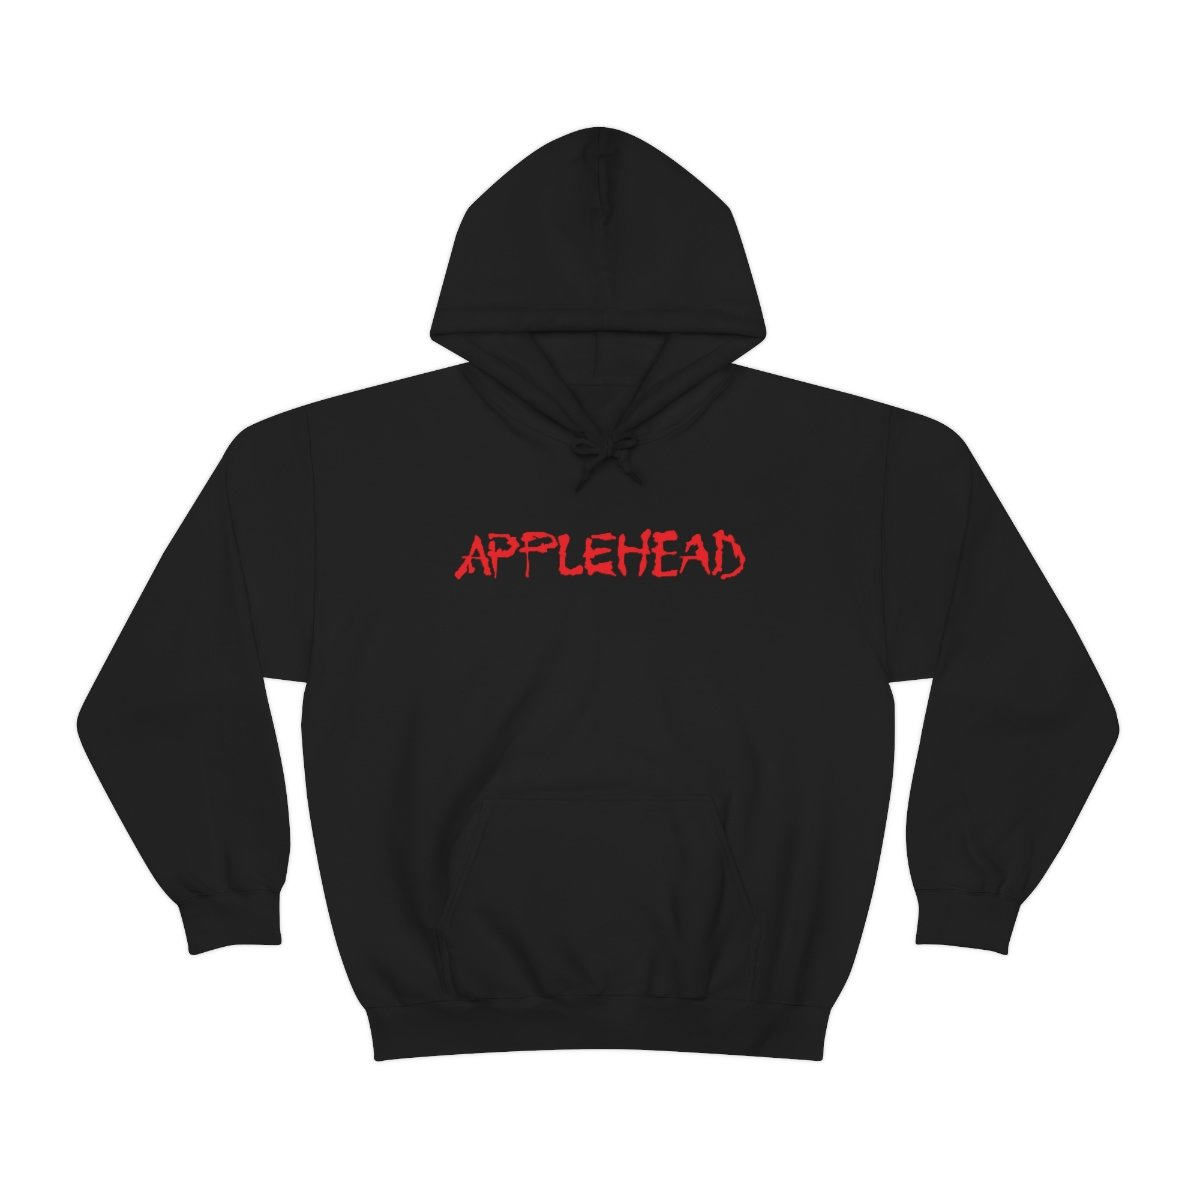 Applehead – Poison Apple Pullover Hooded Sweatshirt